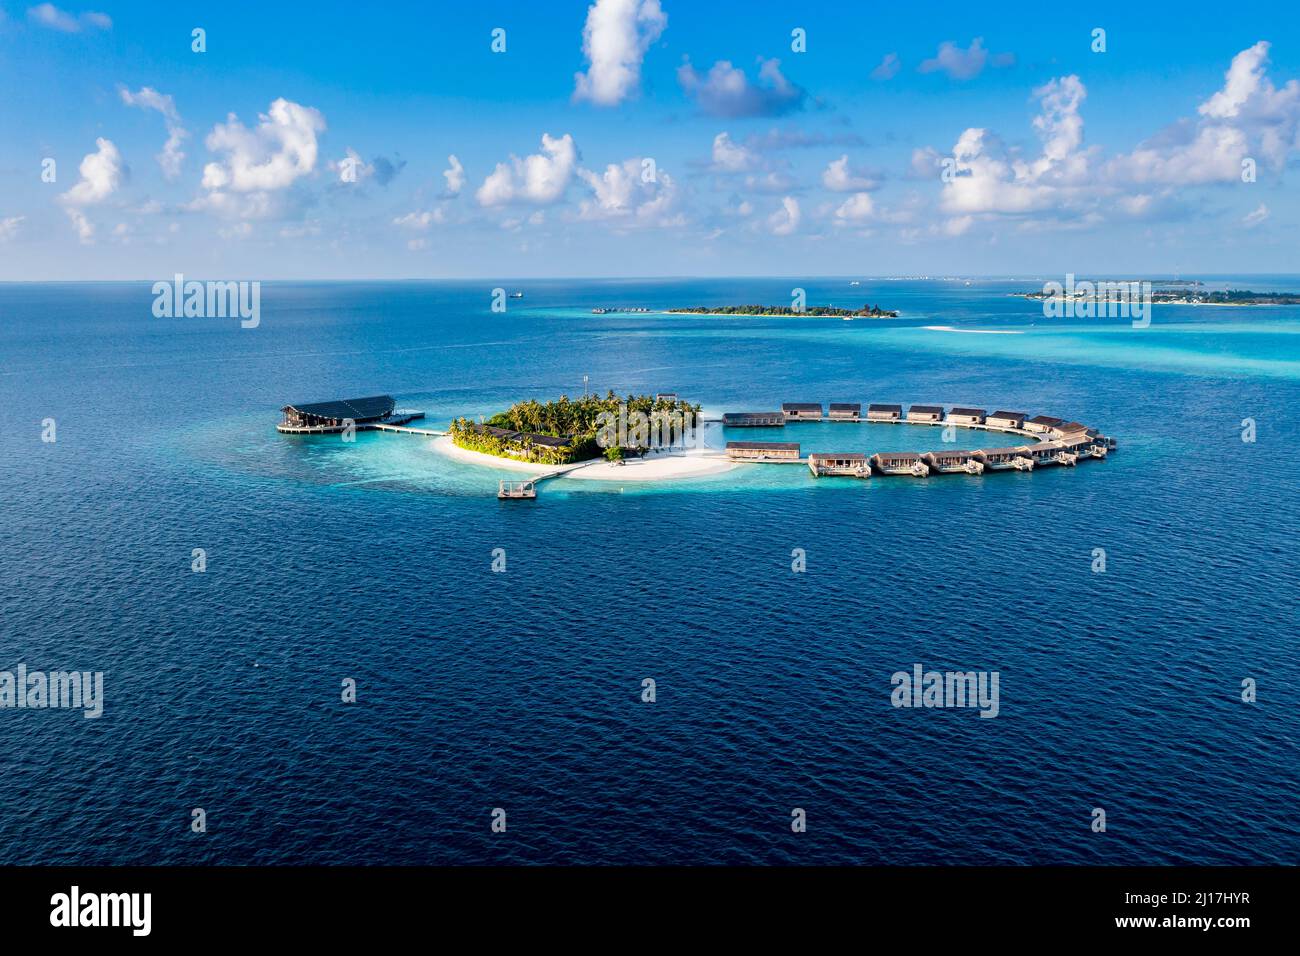 Bungalows entourés d'une vue sur la mer bleue sur l'île de Kudadoo, aux Maldives Banque D'Images